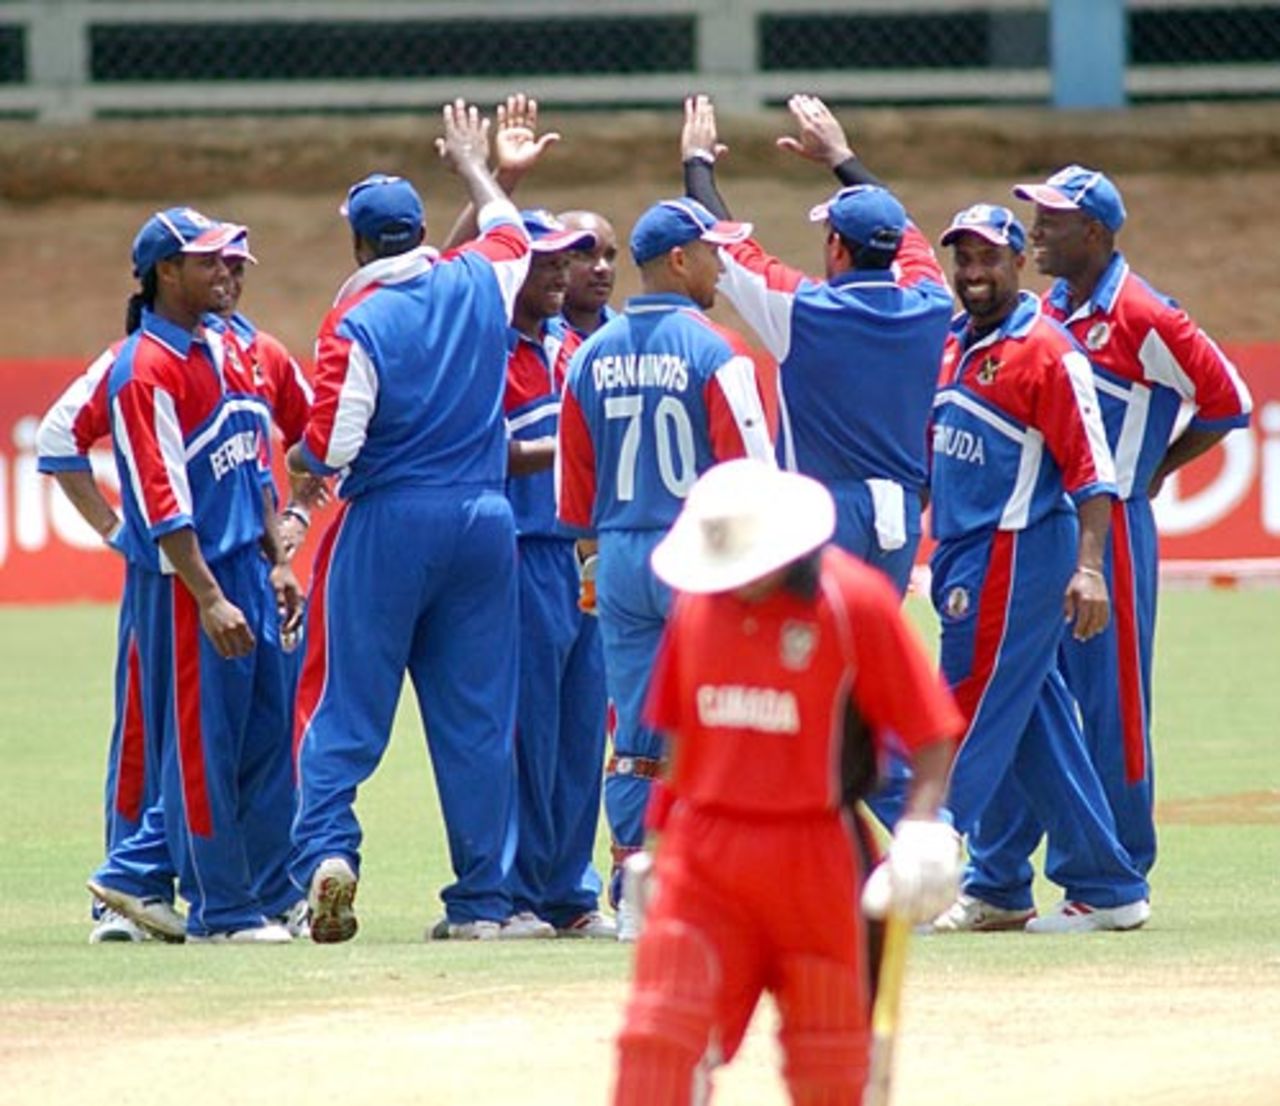 Bermuda celebrate a Canadian wicket, Bermuda v Canada, Trinidad, May 17, 2006